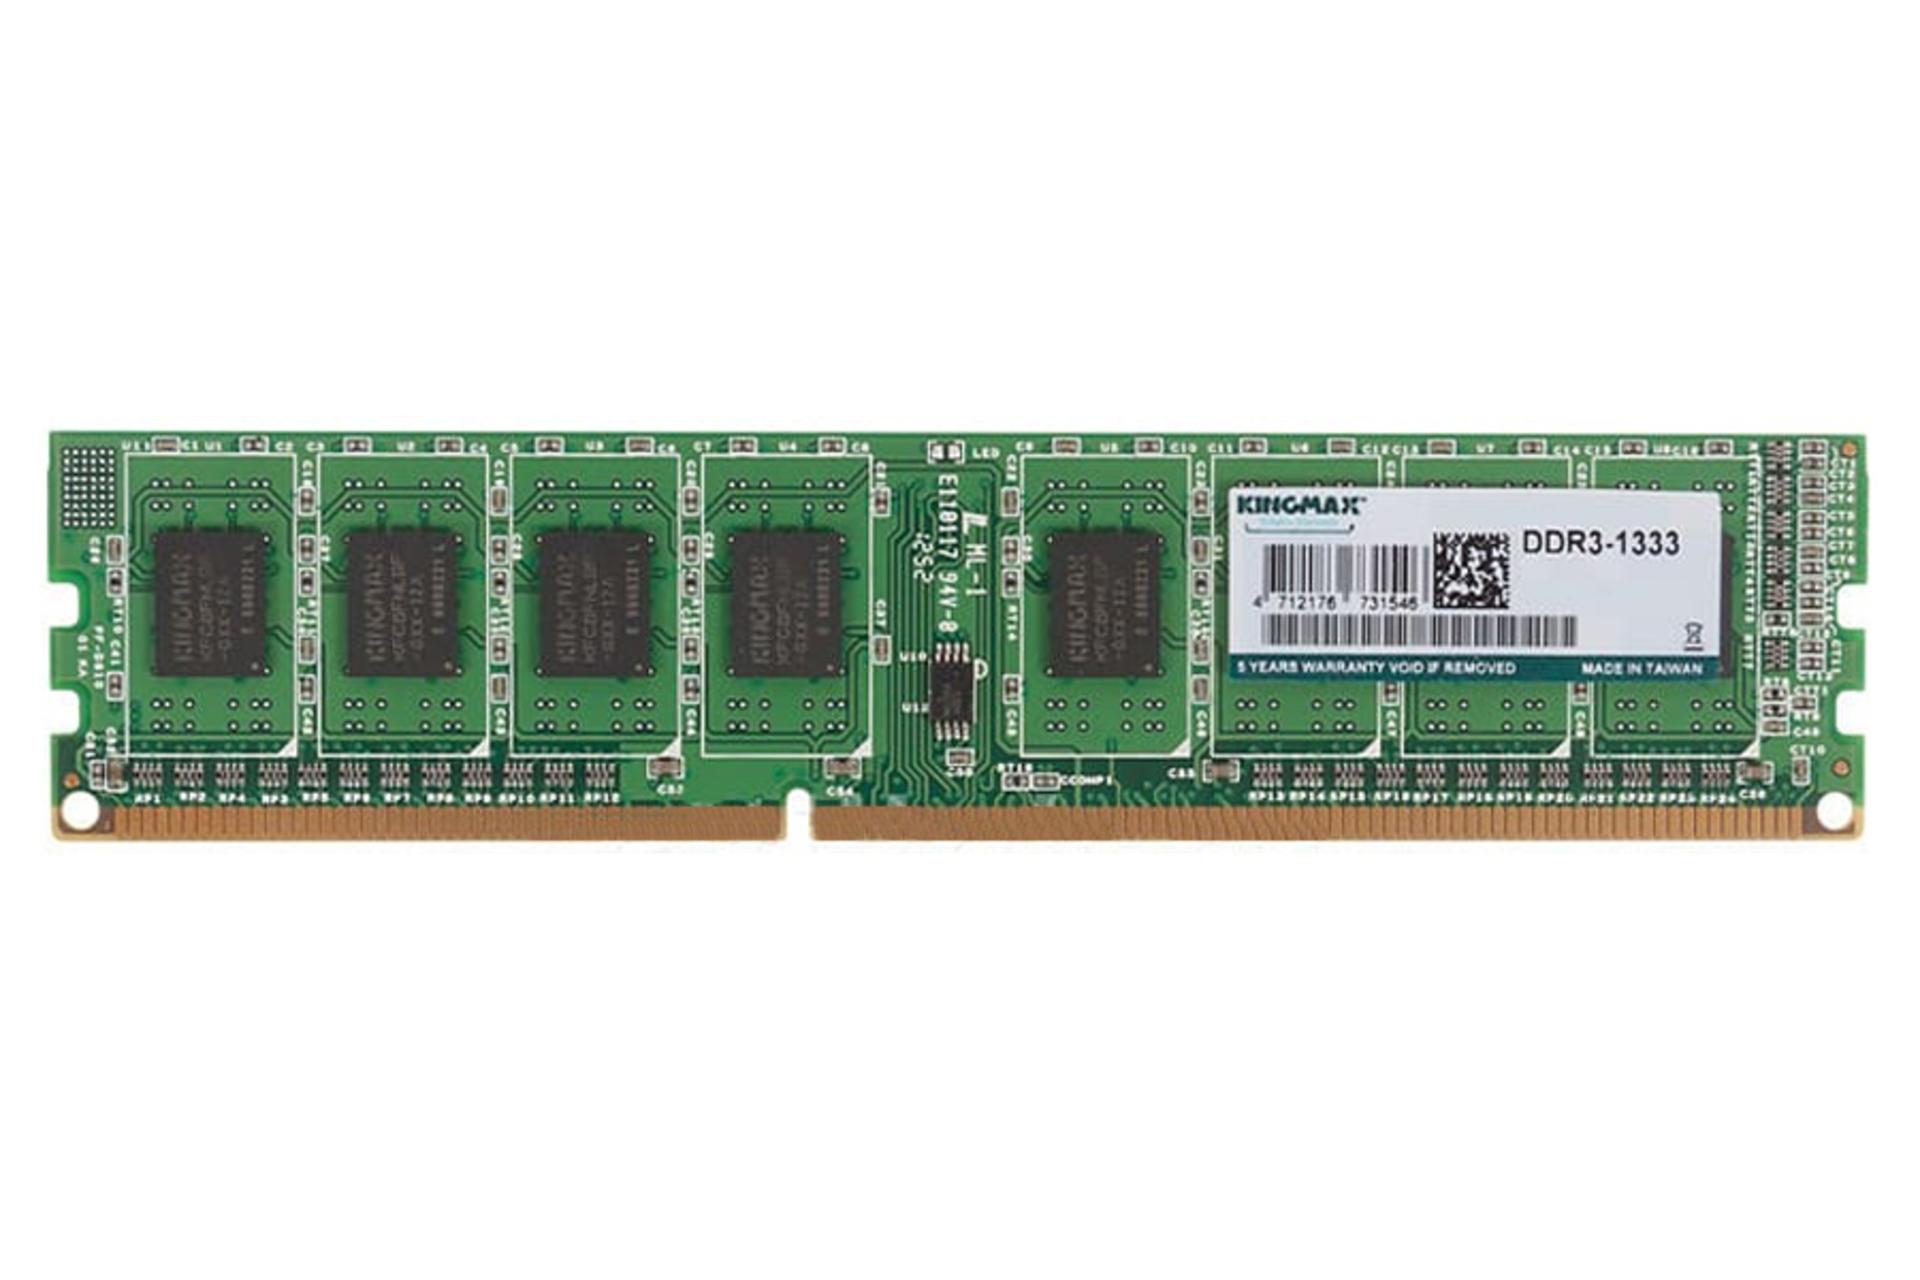 رم کینگ مکس دسکتاپ ظرفیت 4 گیگابایت از نوع DDR3-1333